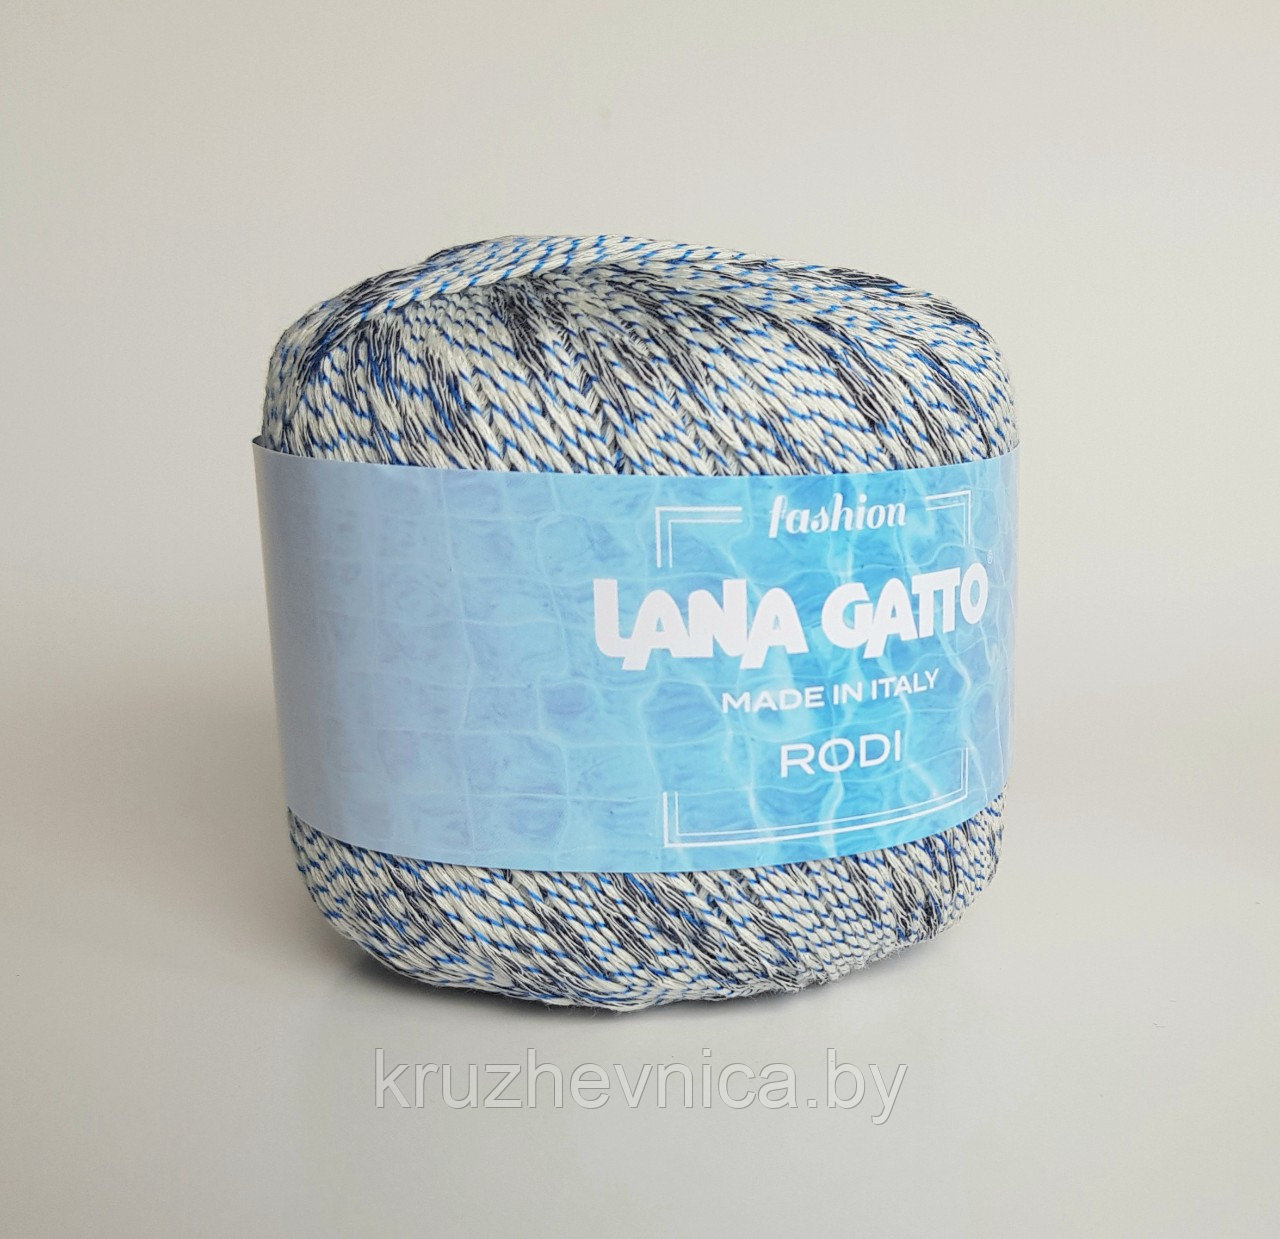 Пряжа Lana Gatto Rodi (68% хлопок, 24% вискоза, 8% нейлон), 50г/155м, цвет 8623 blu